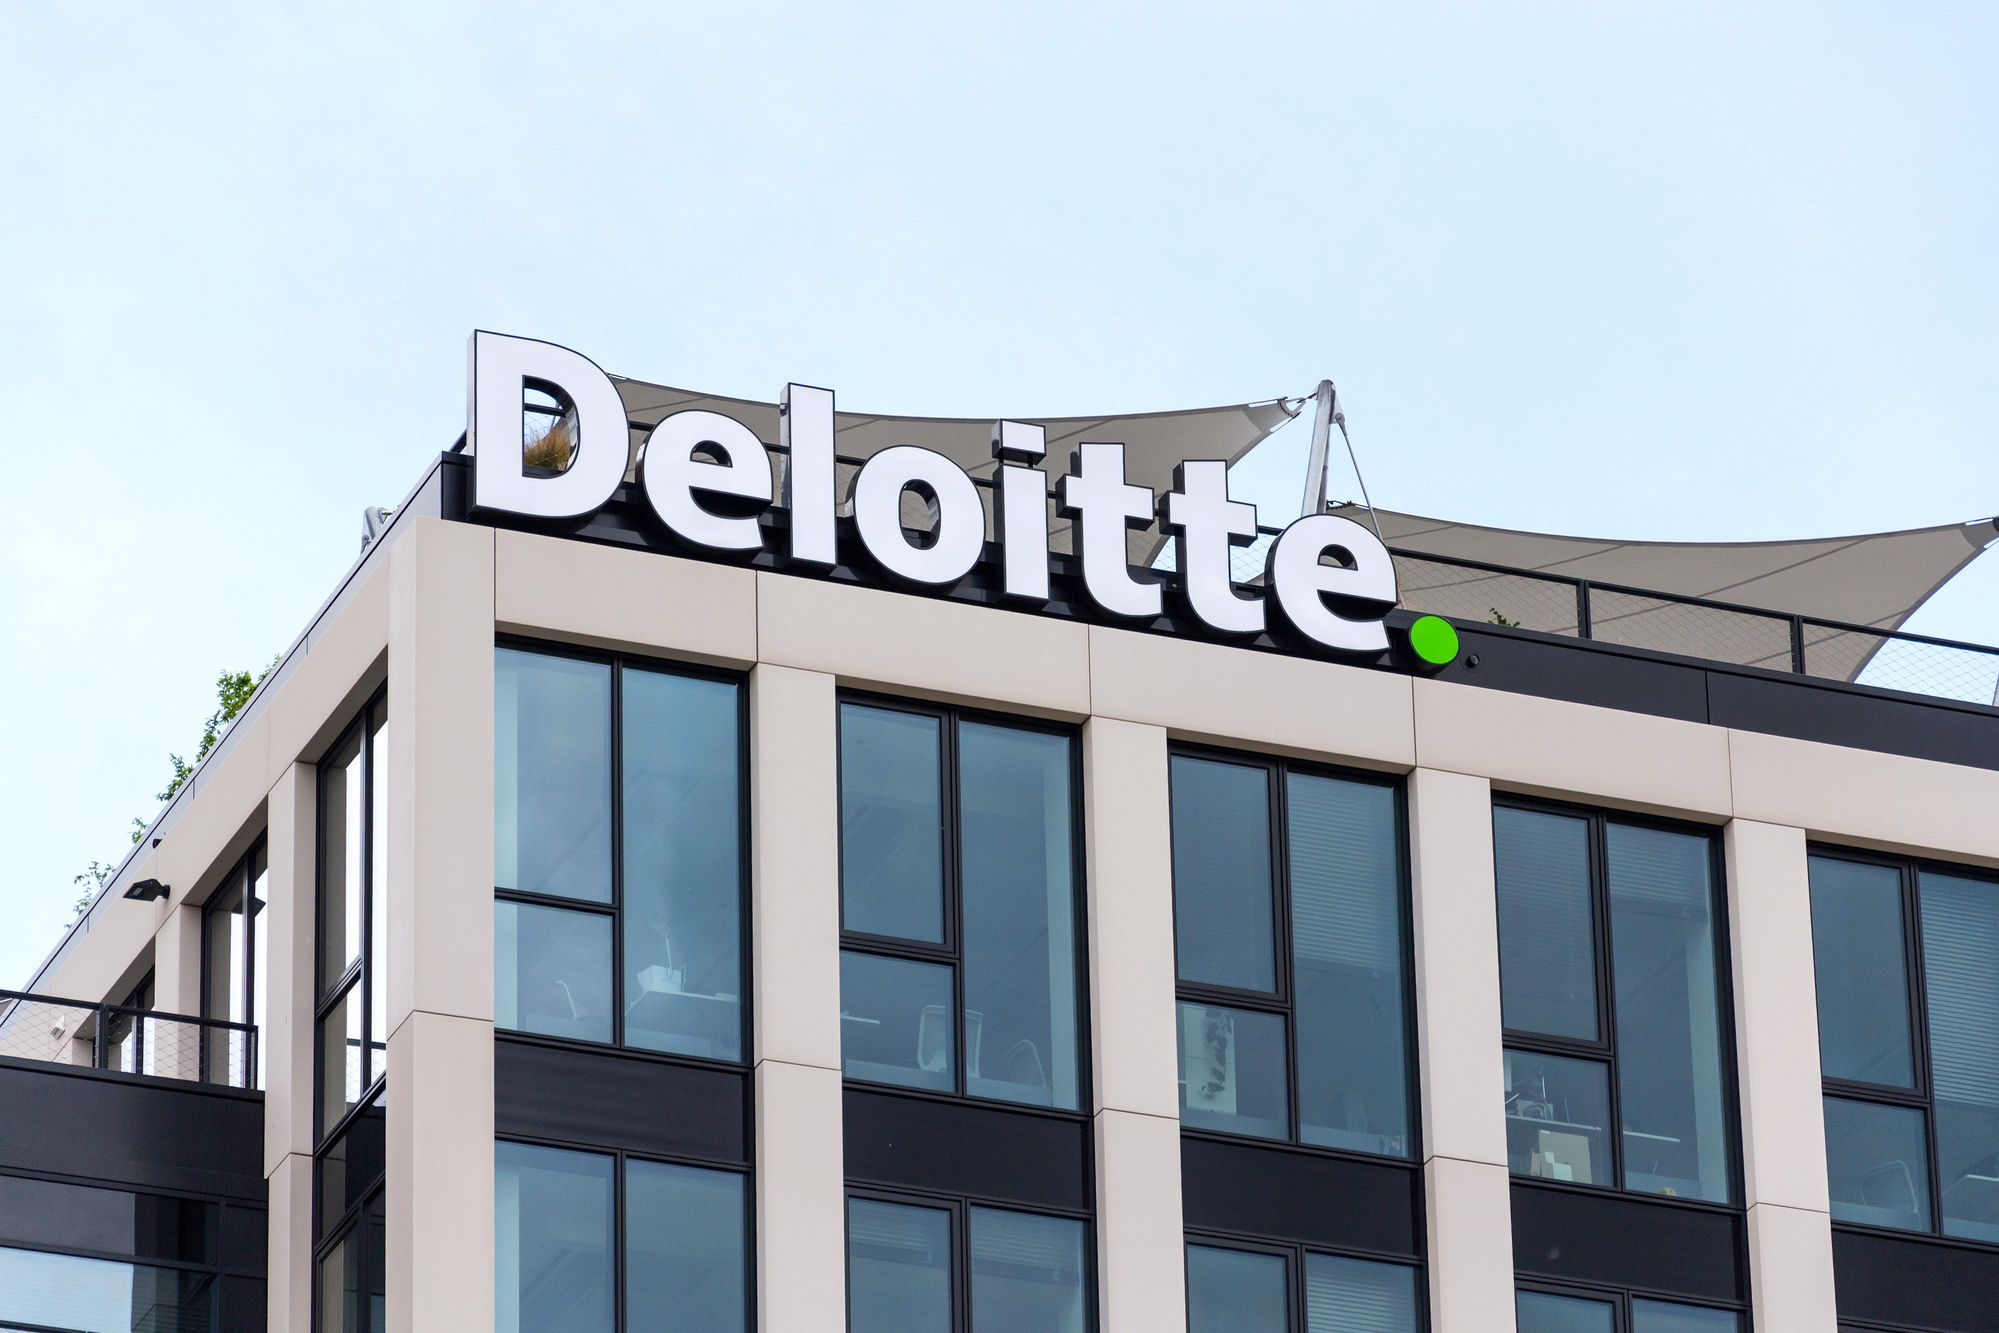 Η Deloitte εγκαινιάζει νέα γραφεία στα Ιωάννινα